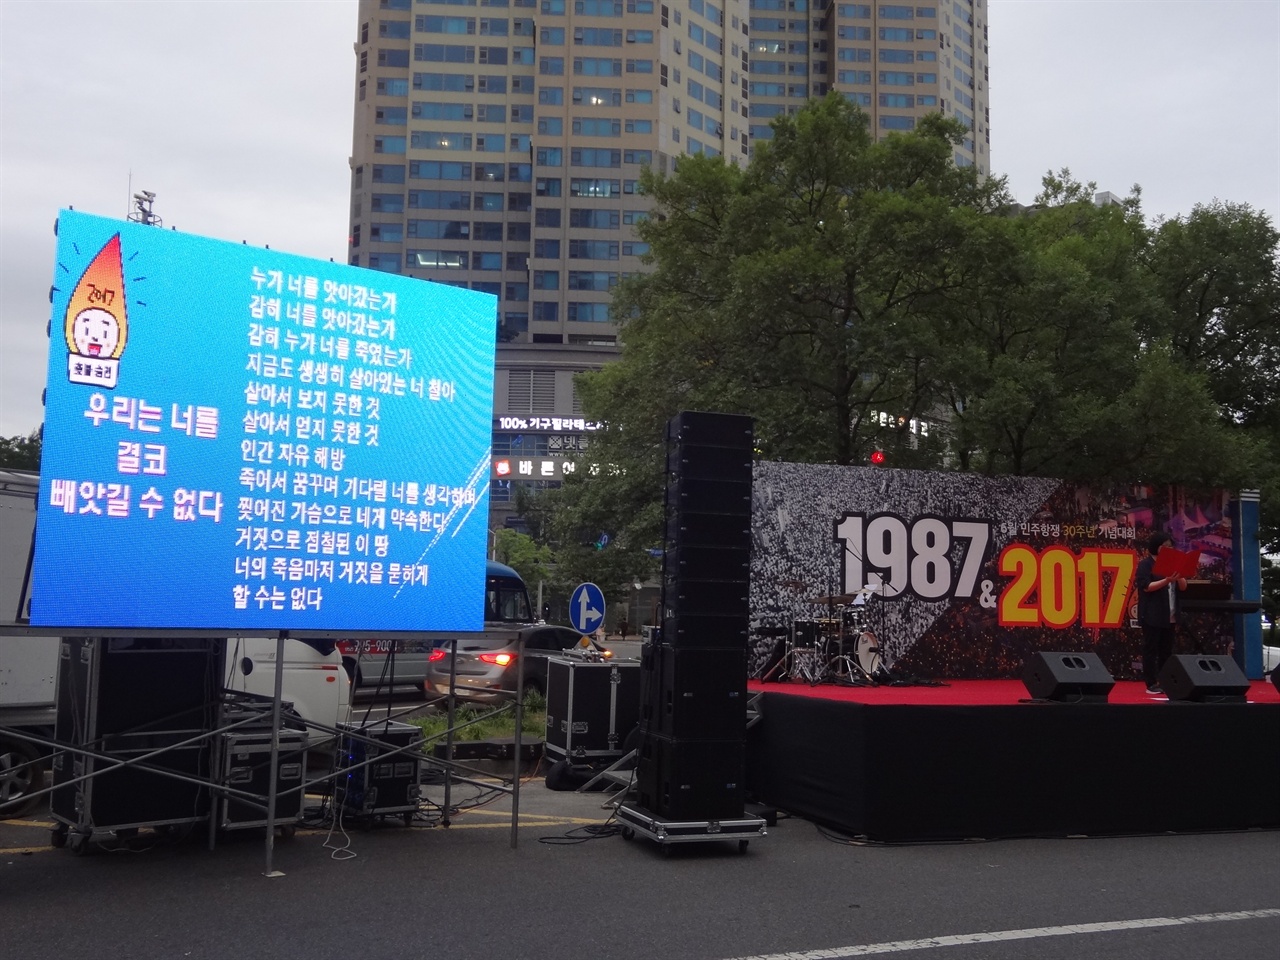 2017년 6월 10일, 울산에서 열린 6.10 민주항쟁 30주년 집회에서 고 박종철 대학생의 추모시를 낭독하는 시간이 있었다.